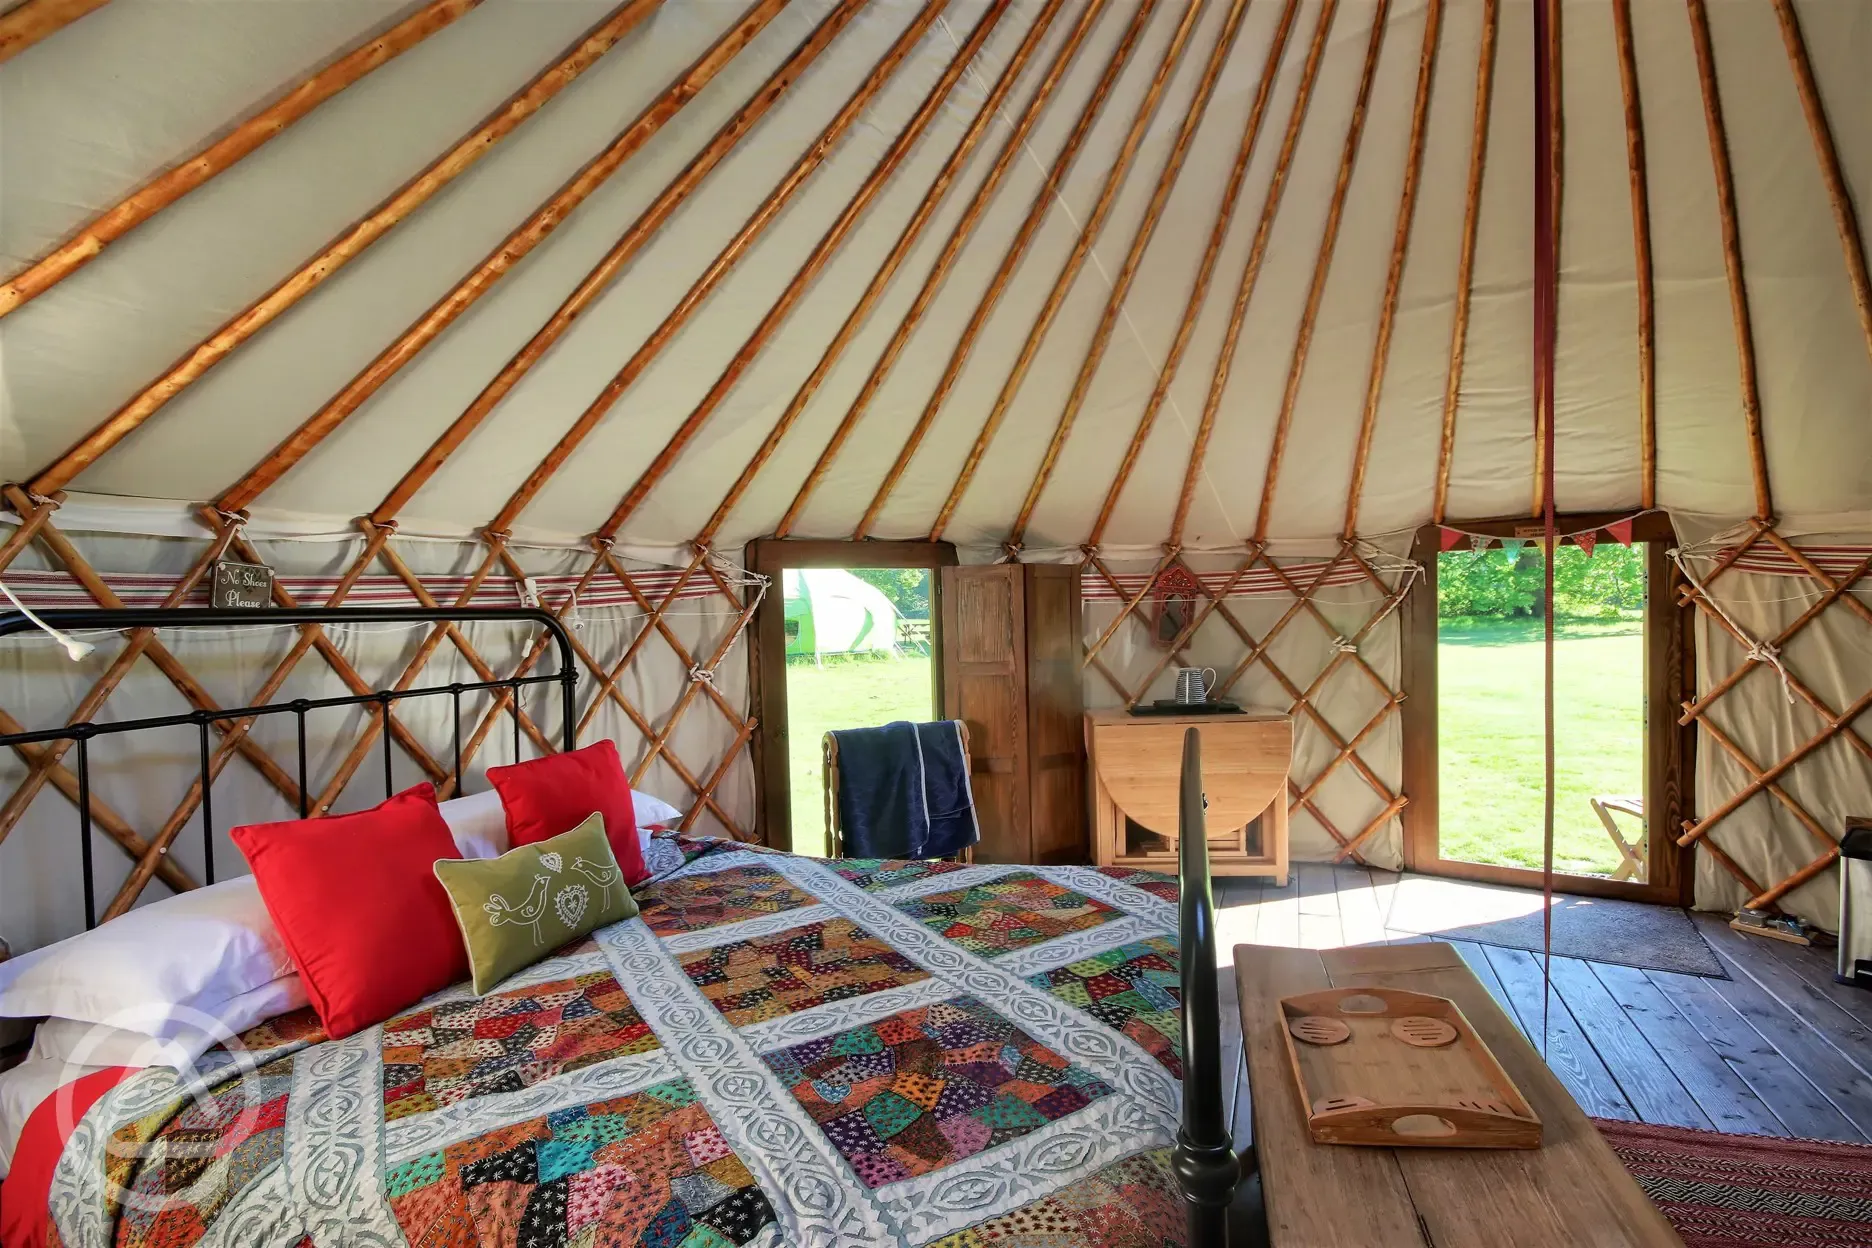 Luxury Yurts with windows